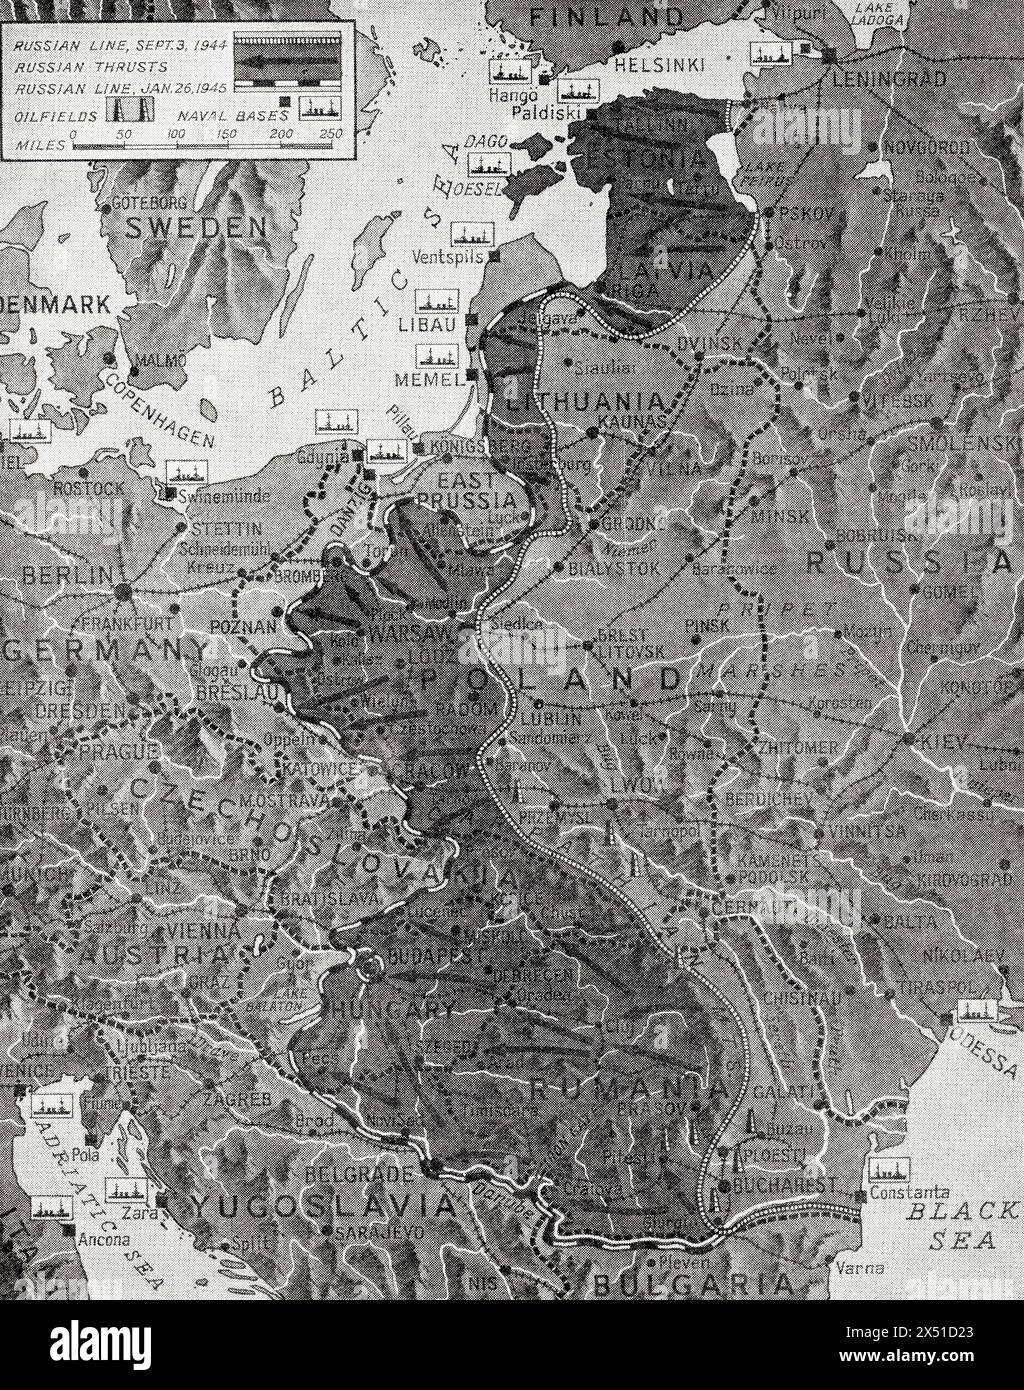 Karte, die die Geschwindigkeit des Vorstoßes der russischen Armee in das Herz des Reichsgebiets im Januar 1945 während des Zweiten Weltkriegs zeigt. Aus dem Krieg in Bildern, sechstes Jahr. Stockfoto